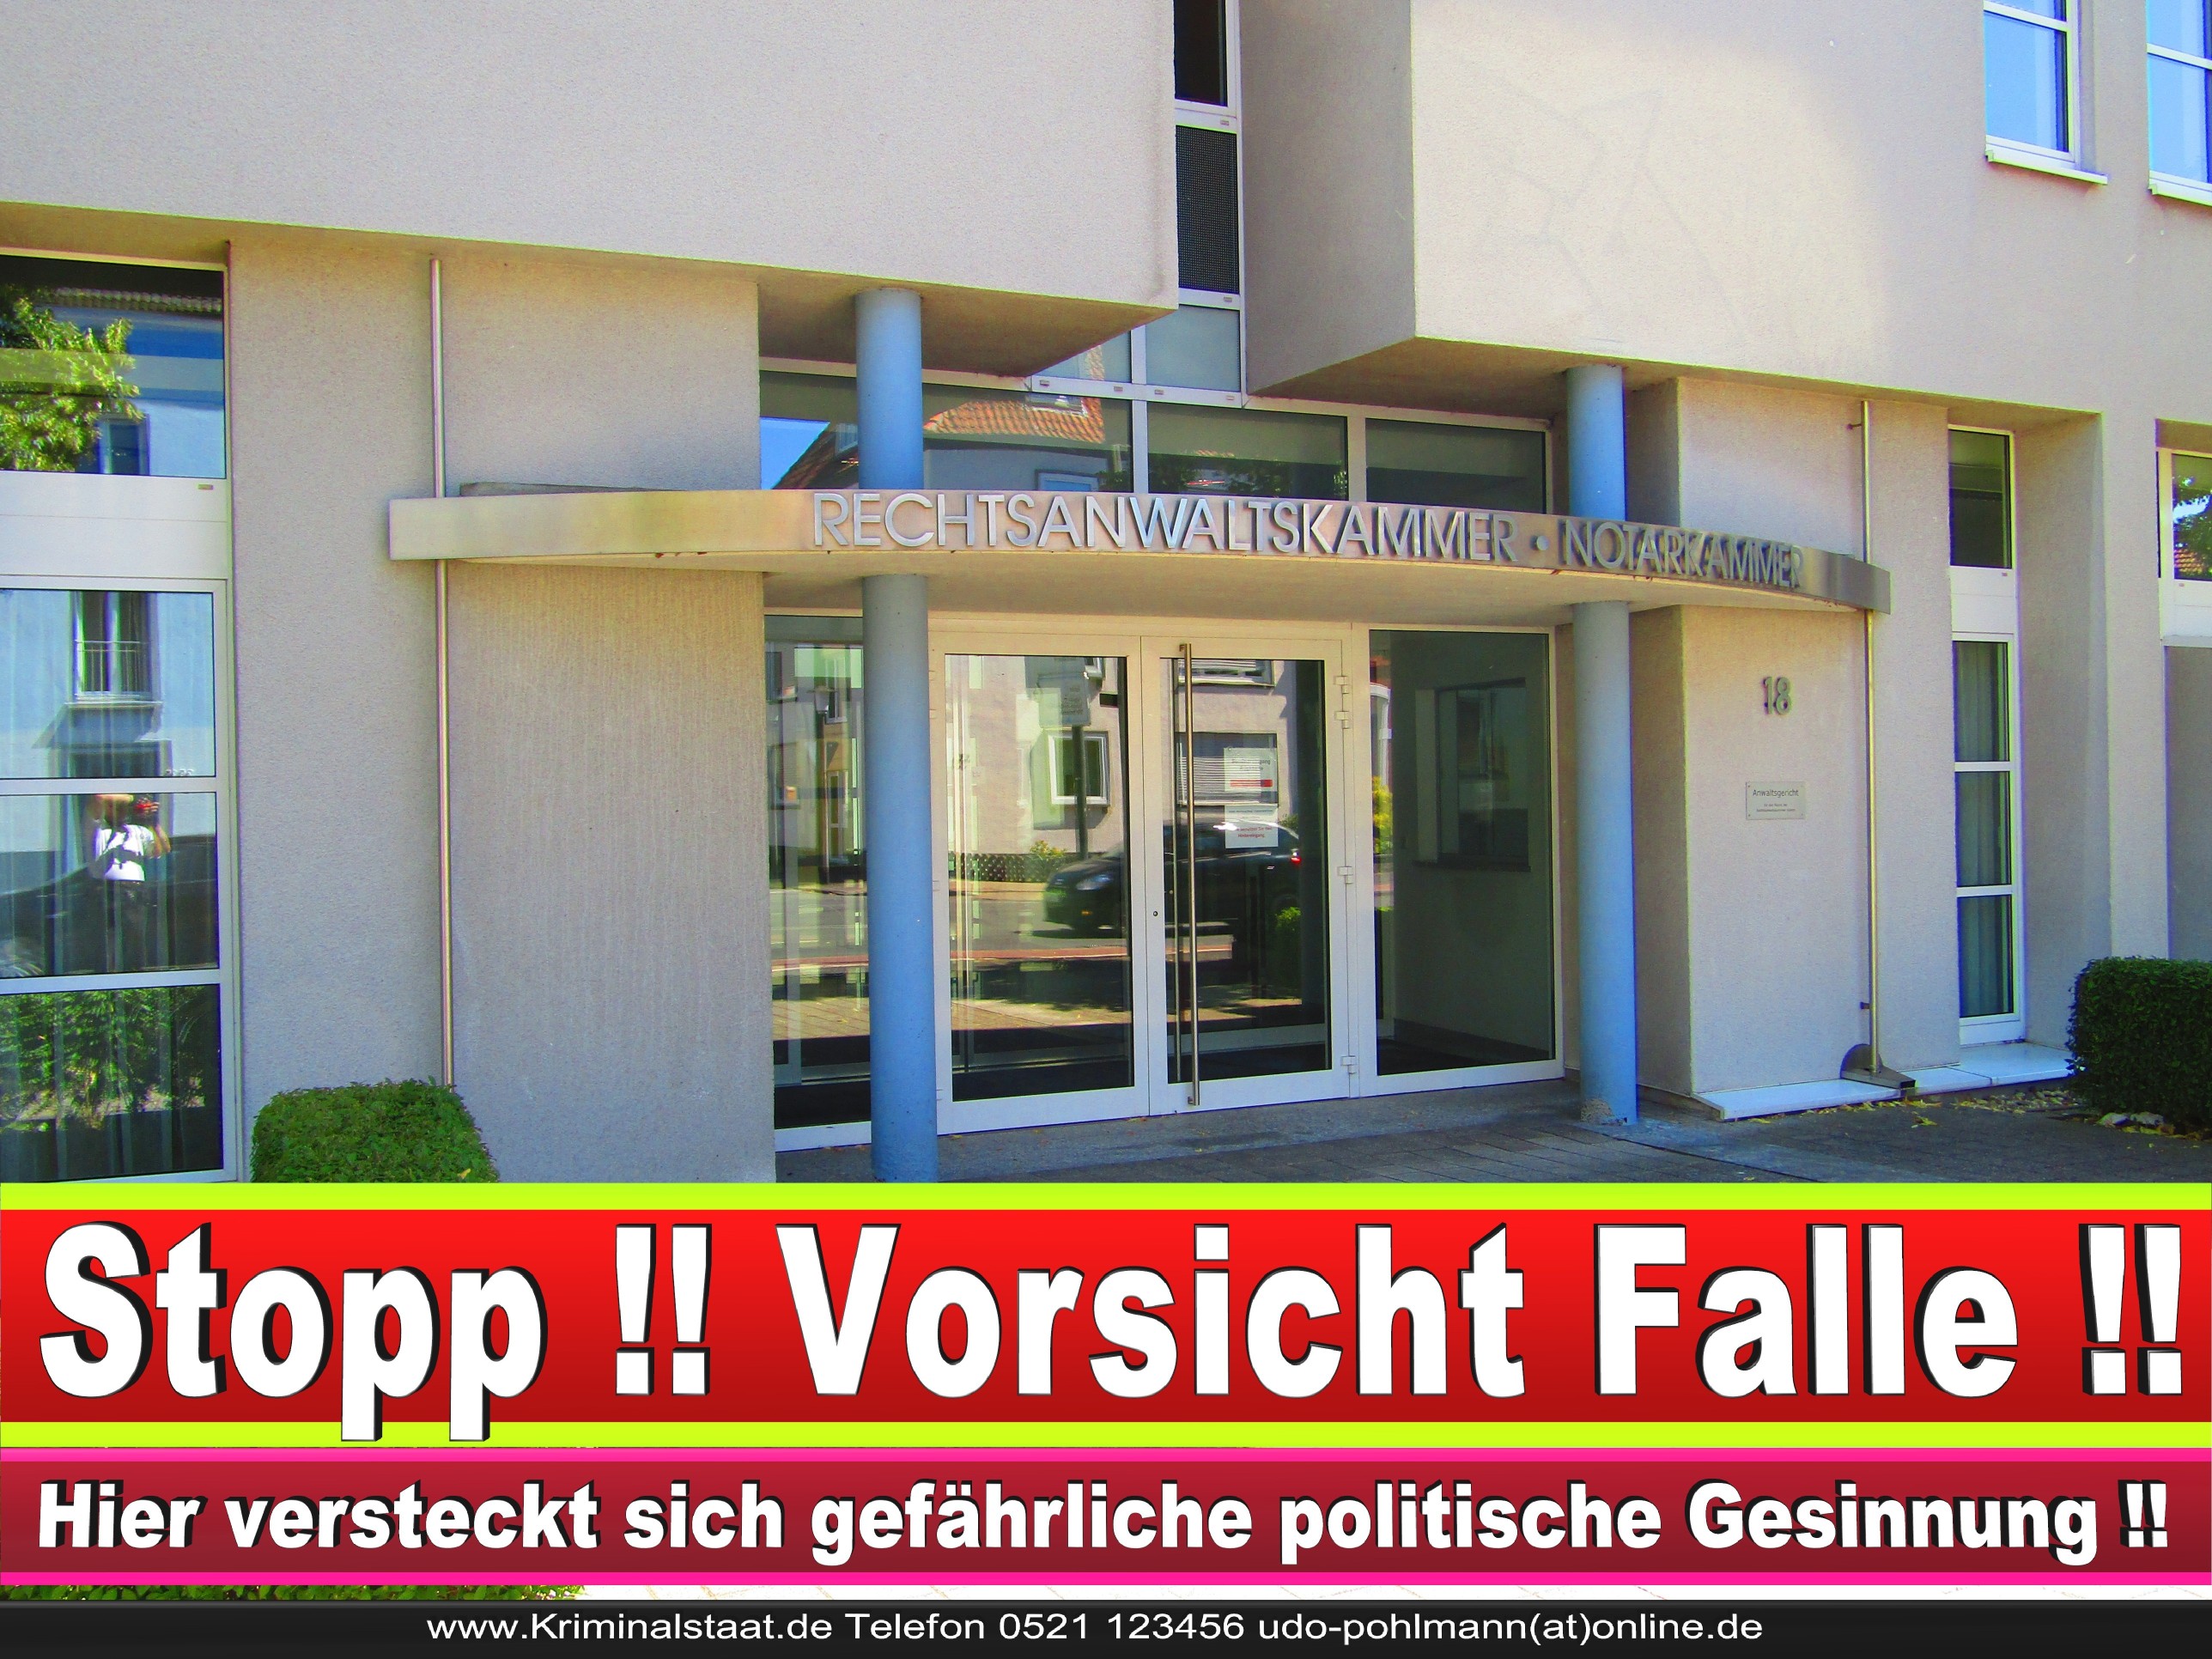 Rechtsanwaltskammer Hamm NRW Justizminister Rechtsanwalt Notar Vermögensverfall Urteil Rechtsprechung CDU SPD FDP Berufsordnung Rechtsanwälte Rechtsprechung (12) 1